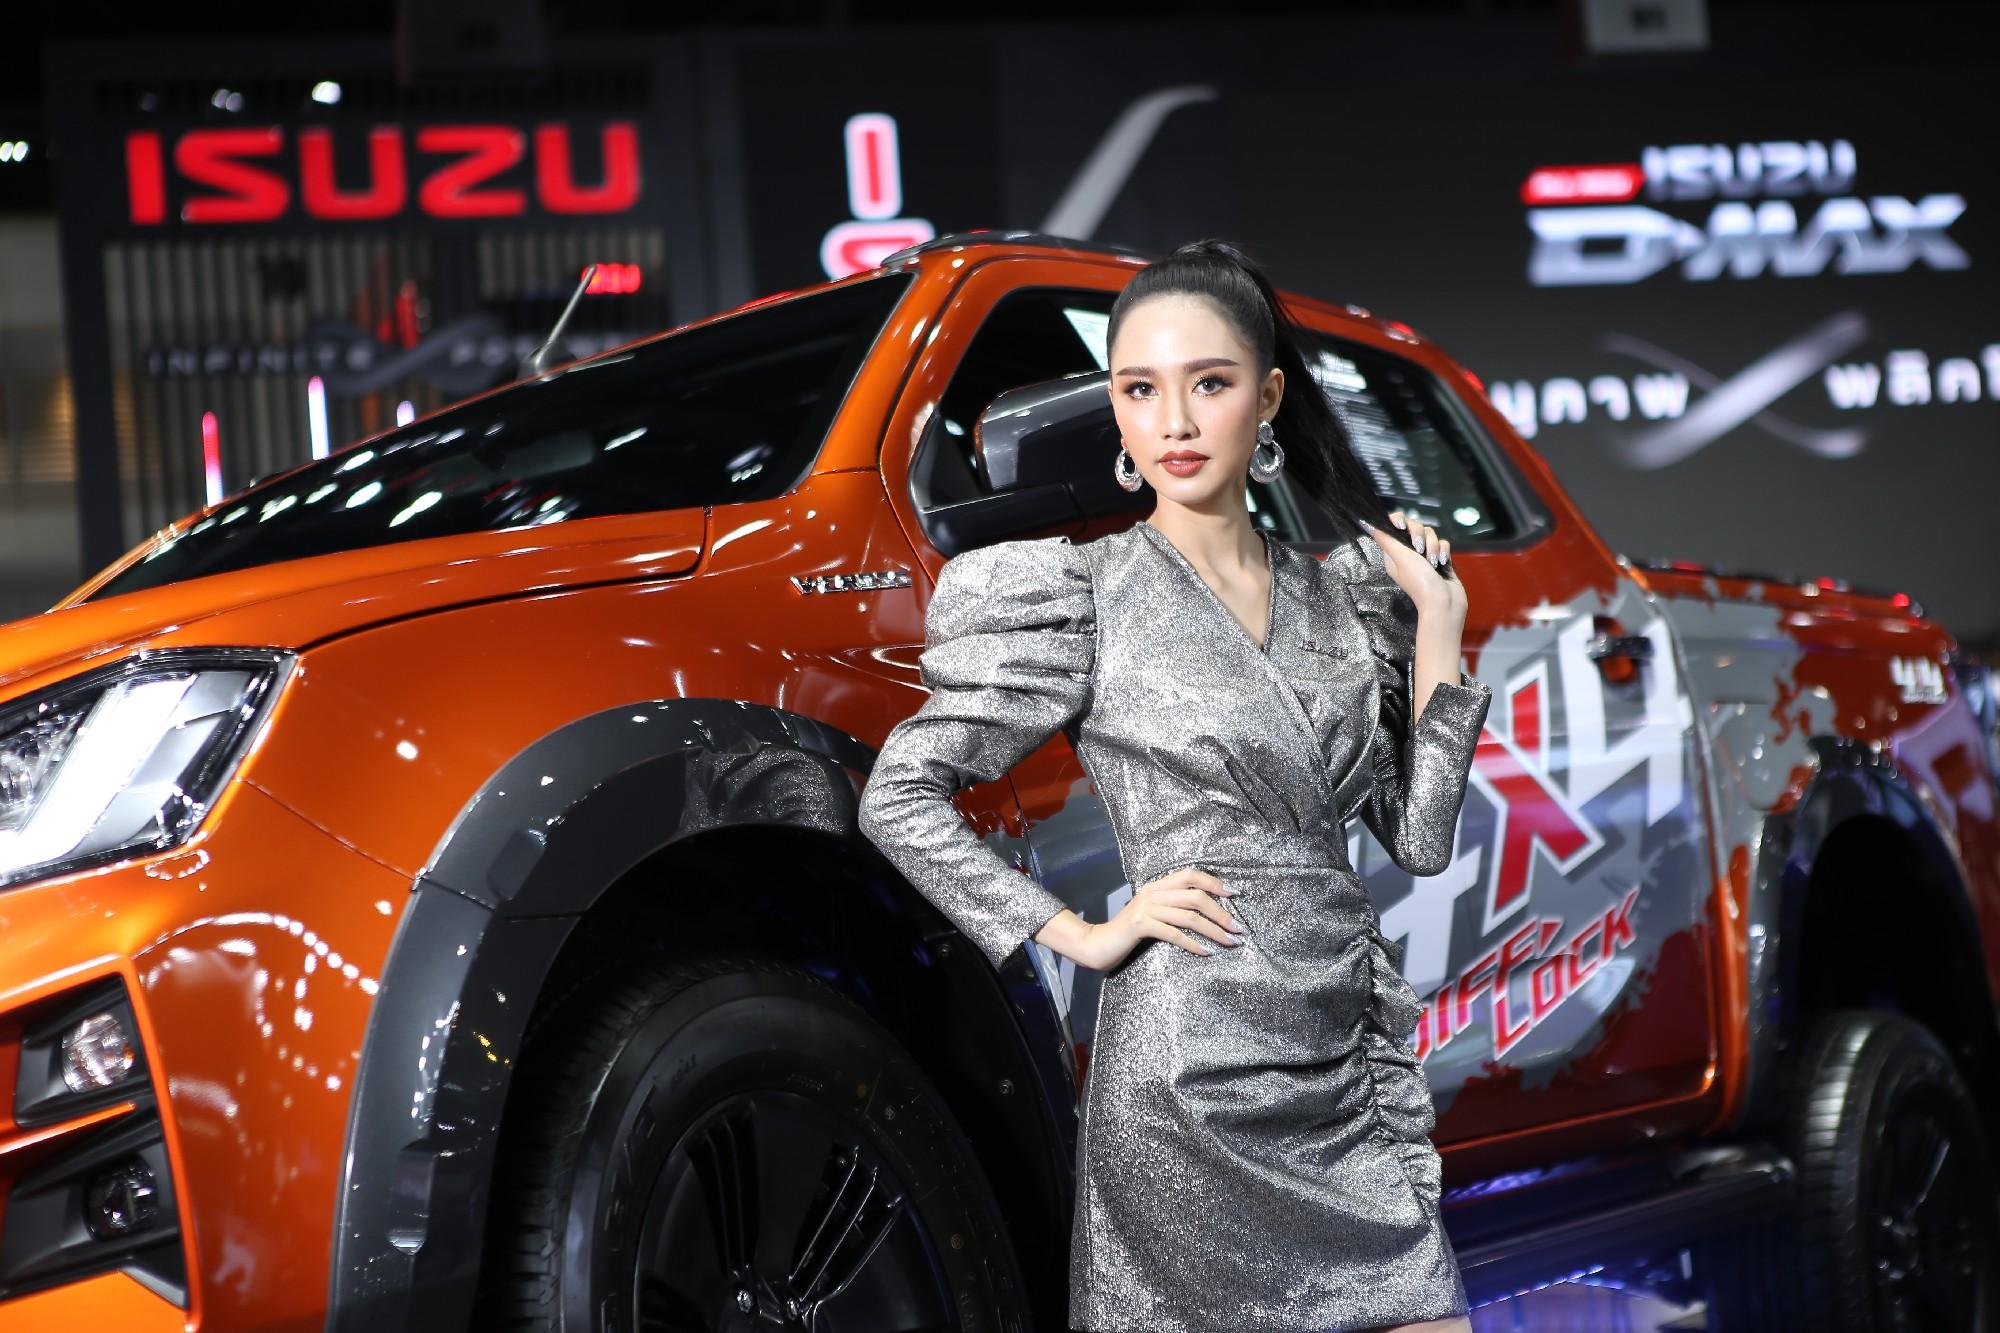 Motor Expo 2019: รถเด่นค่าย Isuzu ห้ามพลาด กับความแกร่งหลากรูปแบบ